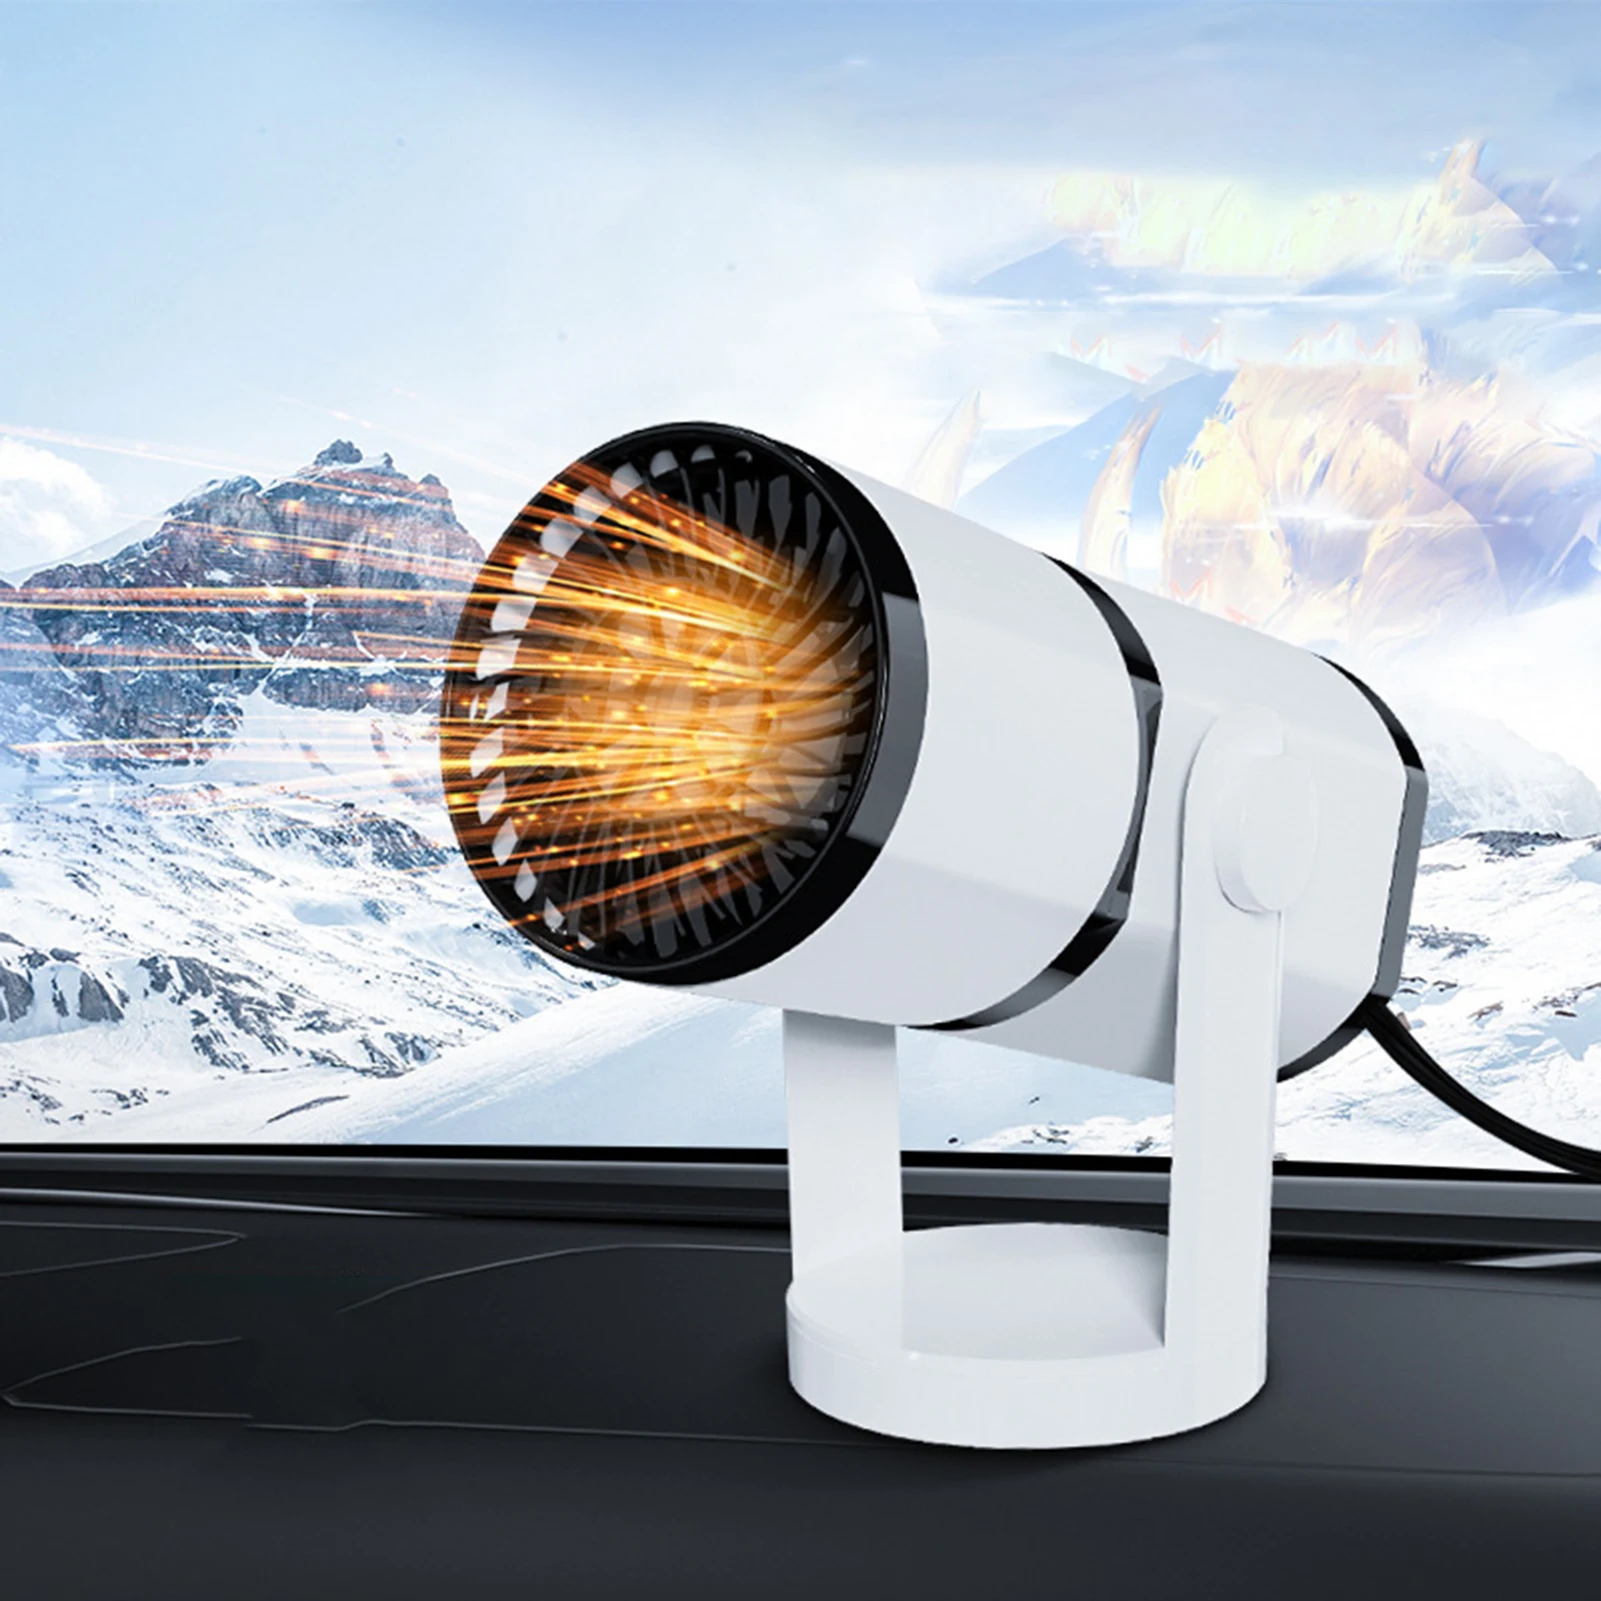 

Автомобильный антизапотевающий обогреватель нагревательный охлаждающий вентилятор с вращающейся основой 12 В 150 Вт 24 в 200 Вт для автомобиля грузовика Rv Прицепа лобового стекла